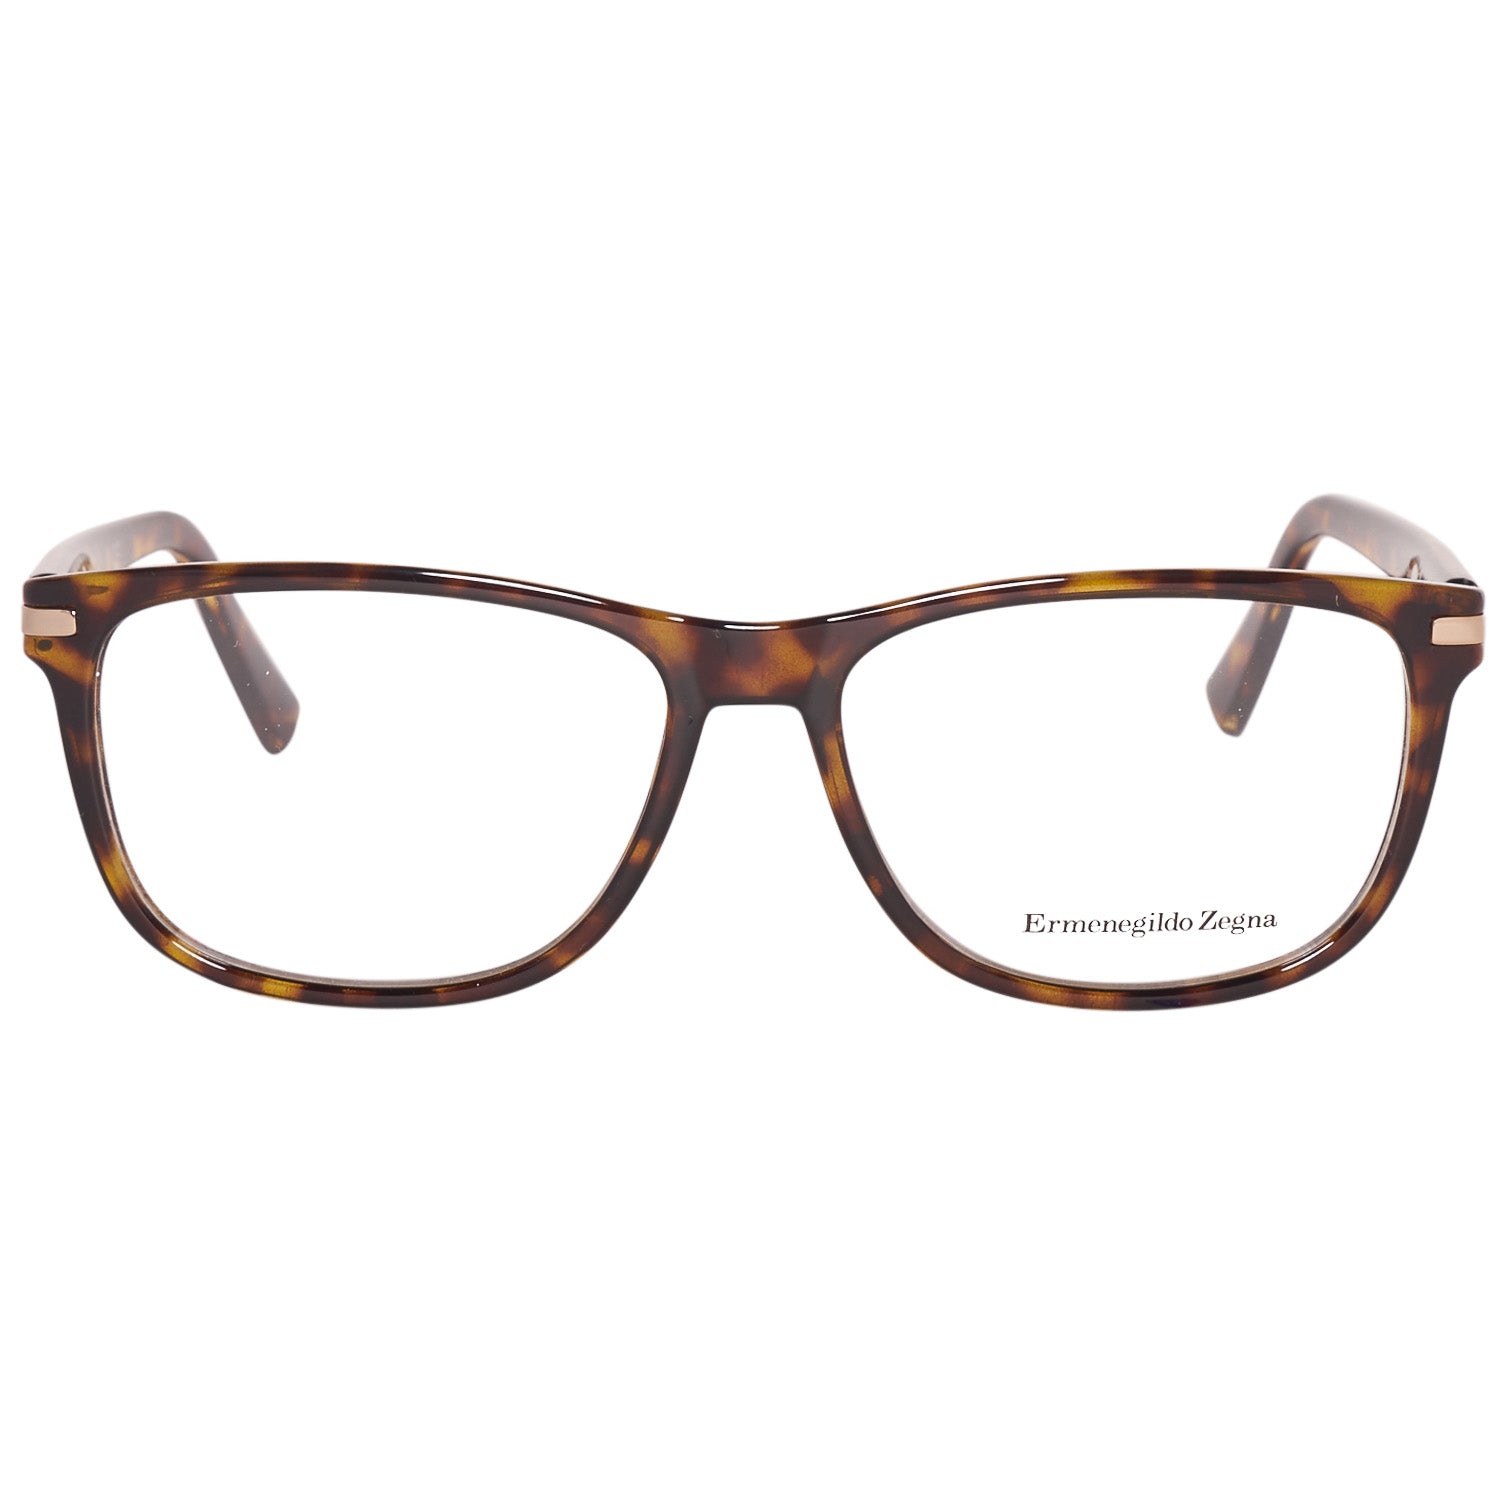 Ermenegildo Zegna Frames Ermenegildo Zegna Glasses Optical Frame EZ5005 052 55 Eyeglasses Eyewear UK USA Australia 